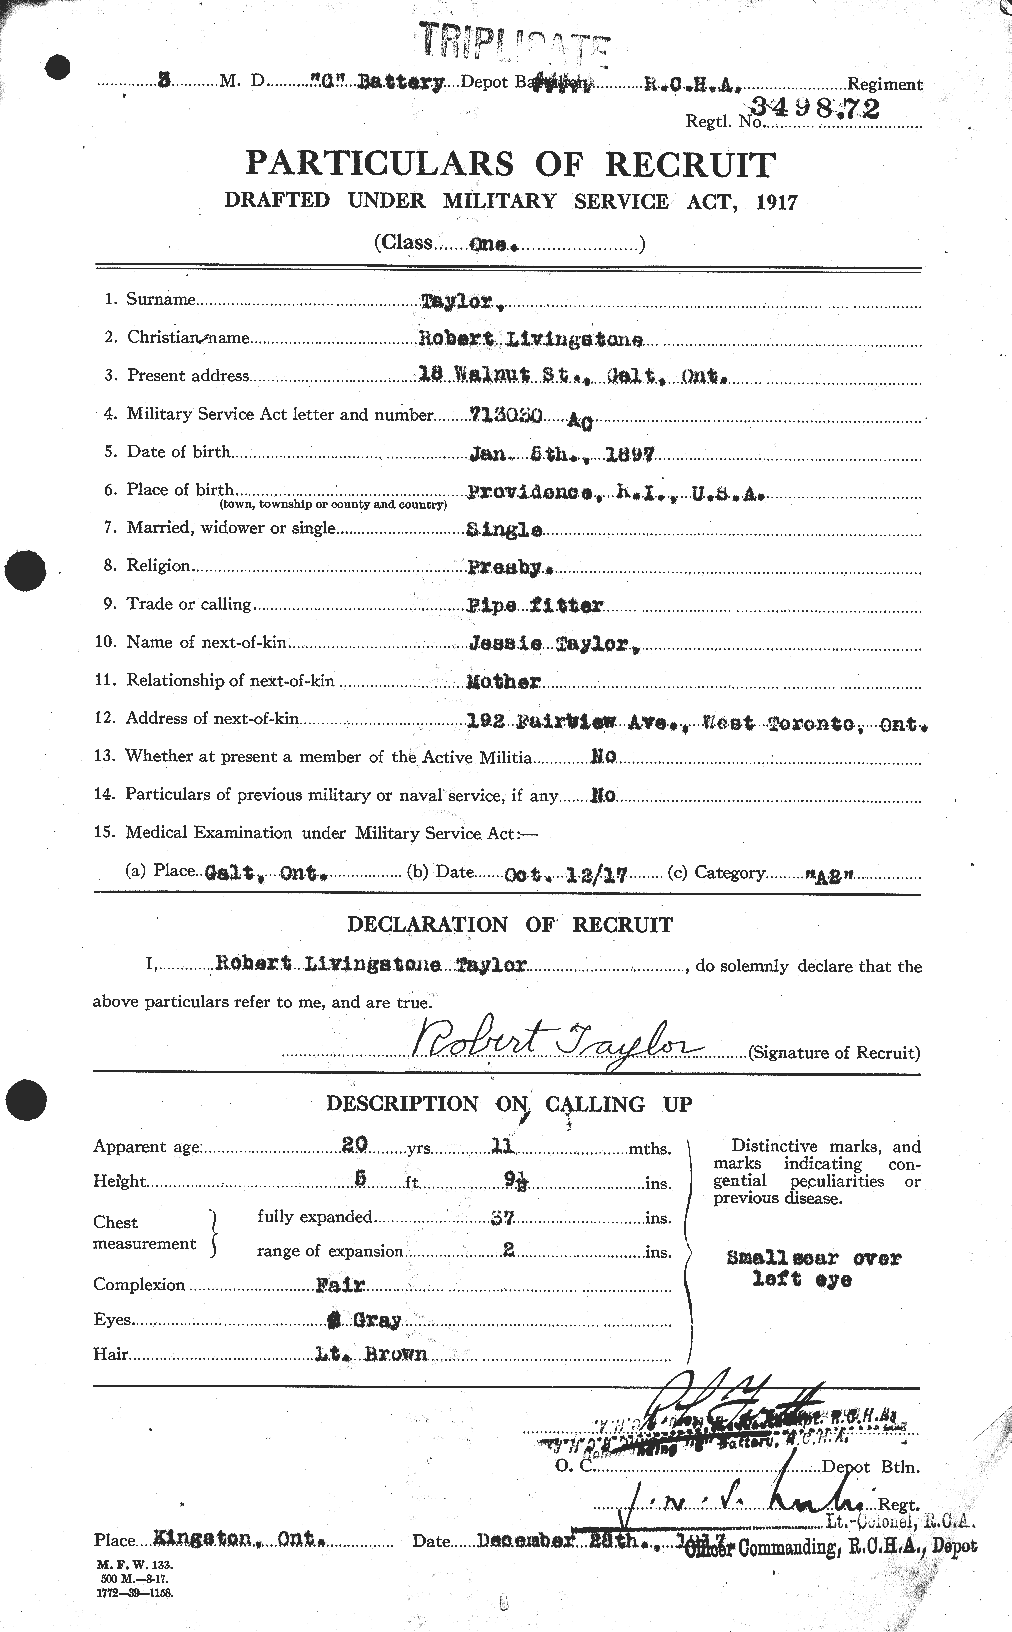 Dossiers du Personnel de la Première Guerre mondiale - CEC 627492a